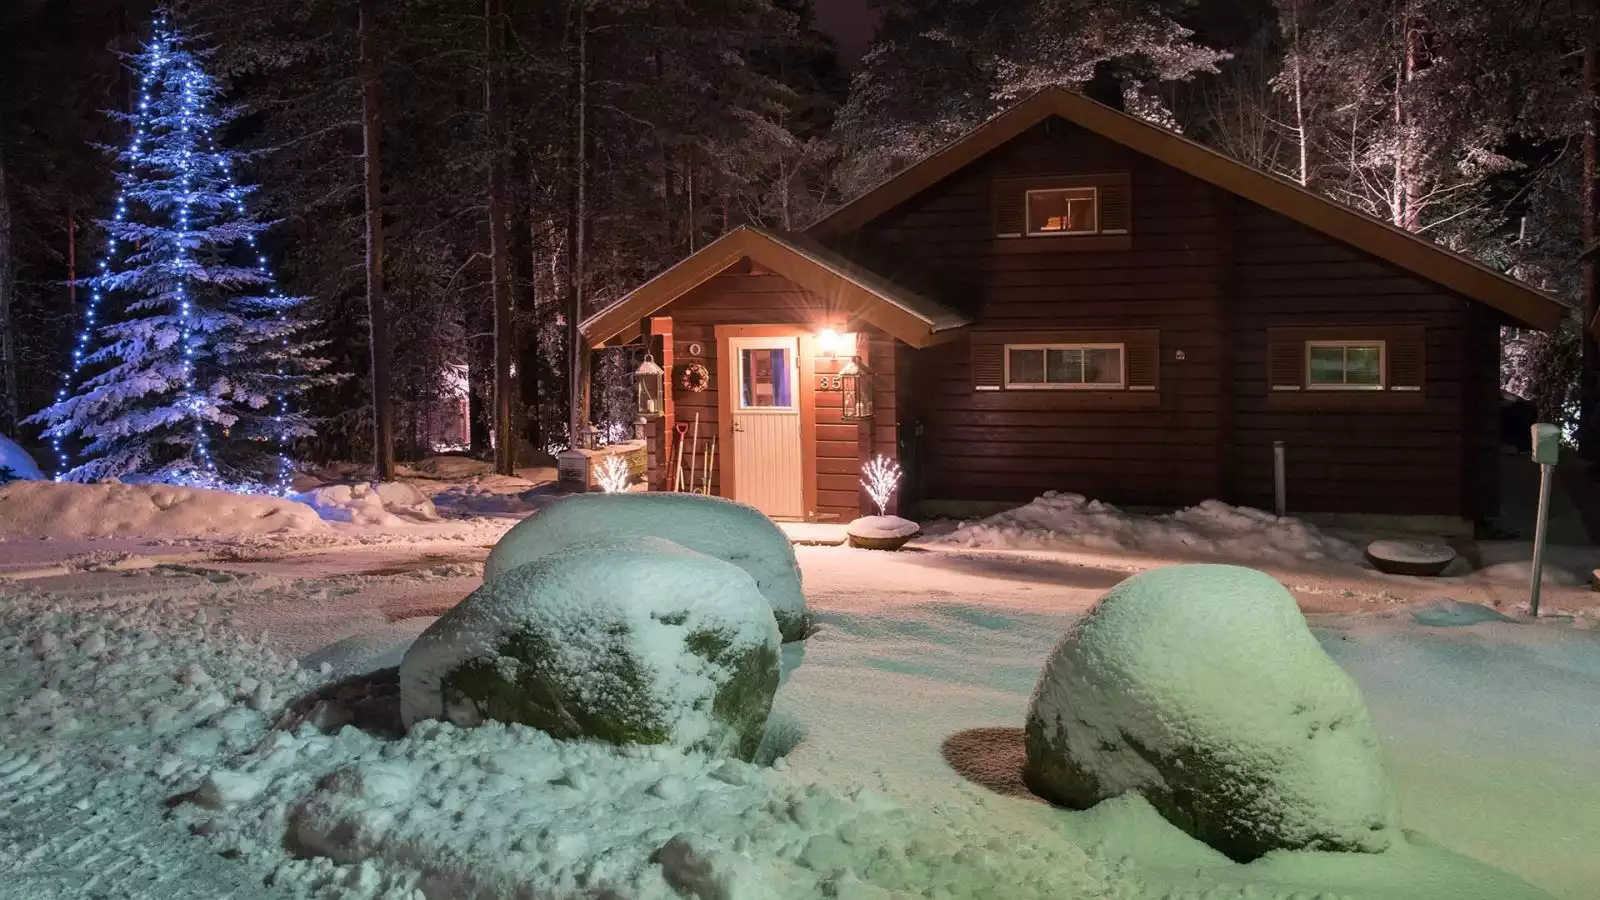 Welkom in de Scandinavische winter!